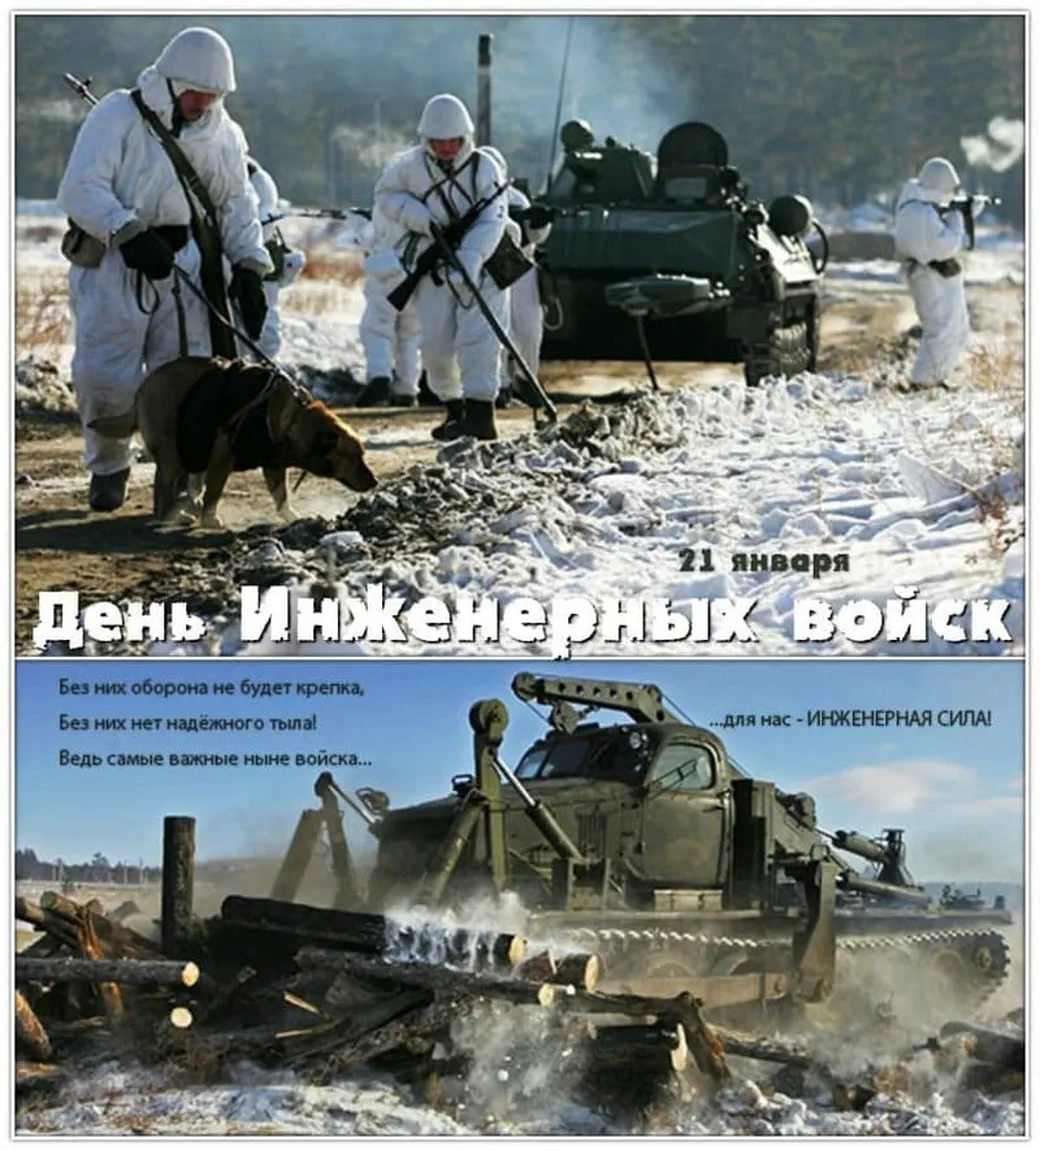 Поздравить с днем инженерных войск России открыткой